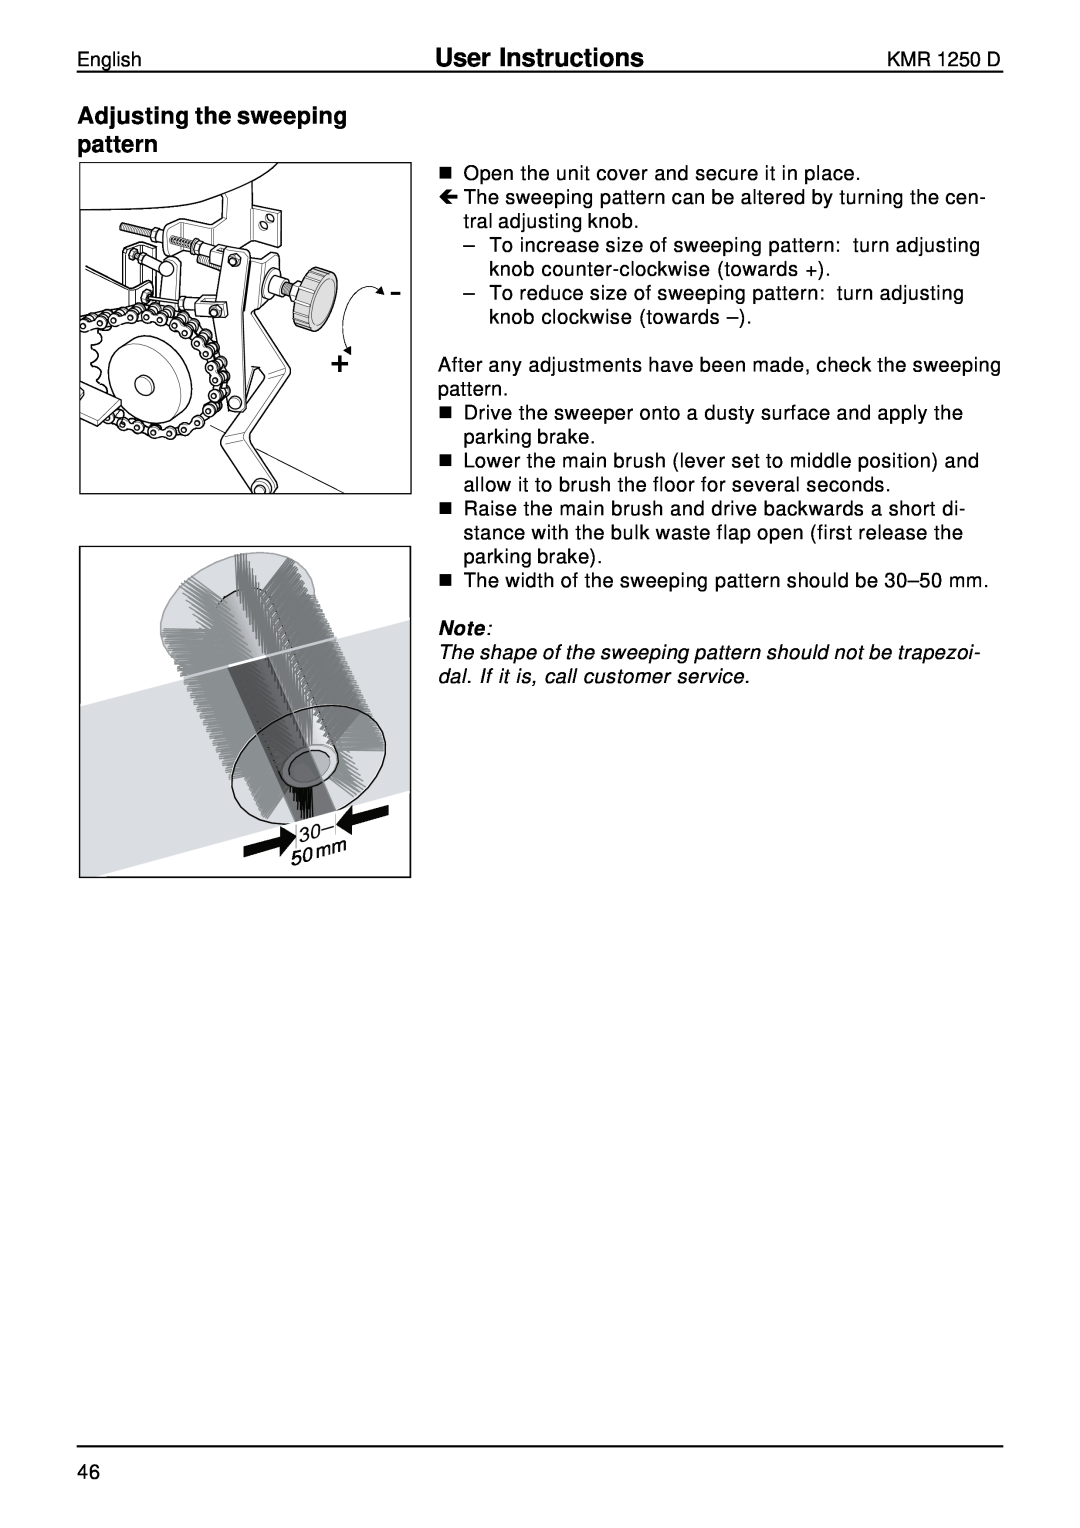 Karcher KMR 1250 D manual Adjusting the sweeping pattern, User Instructions 